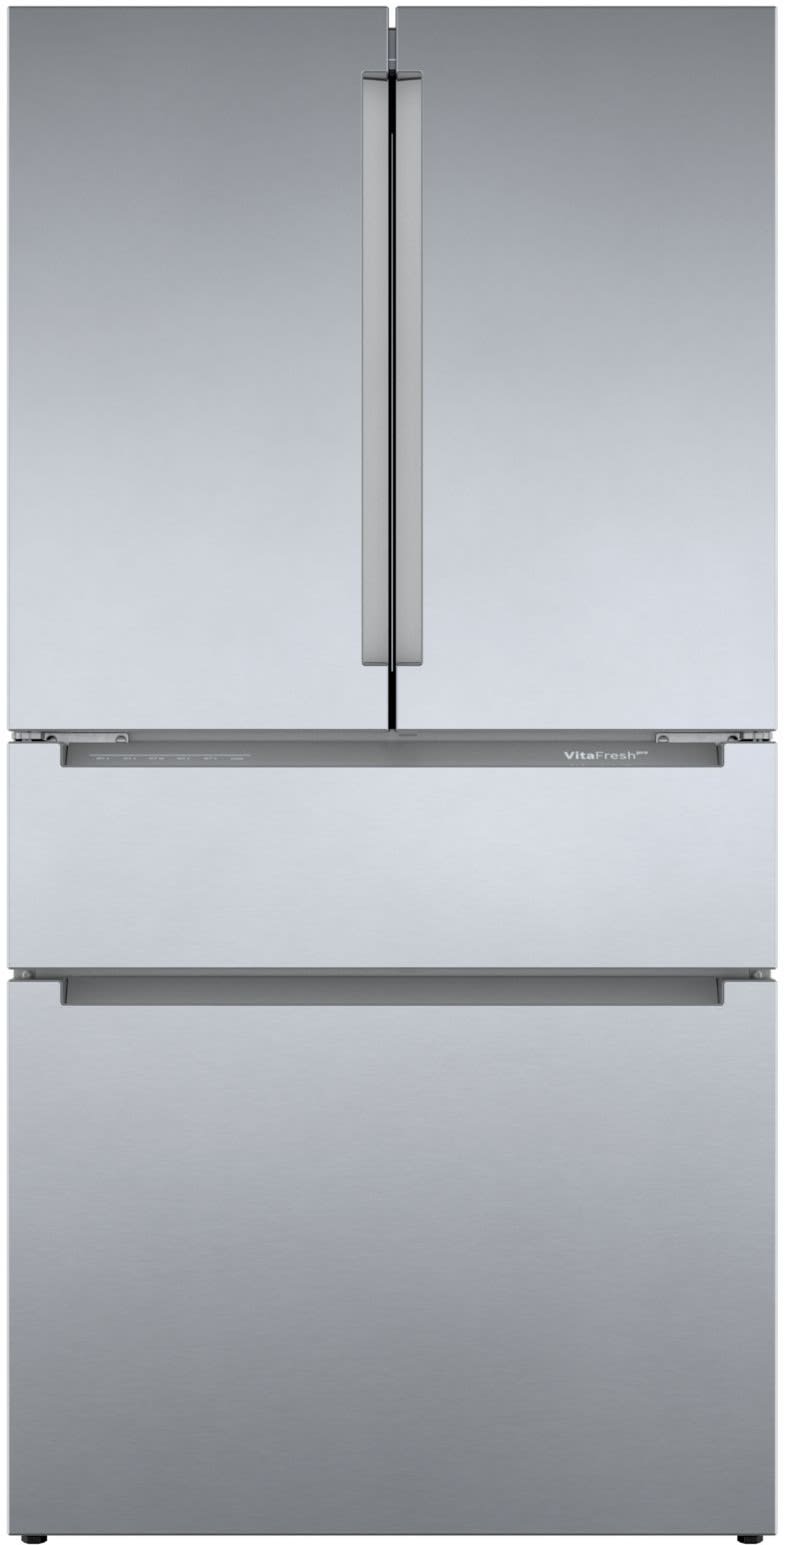 36 Inch Counter Depth French Door Smart Refrigerator